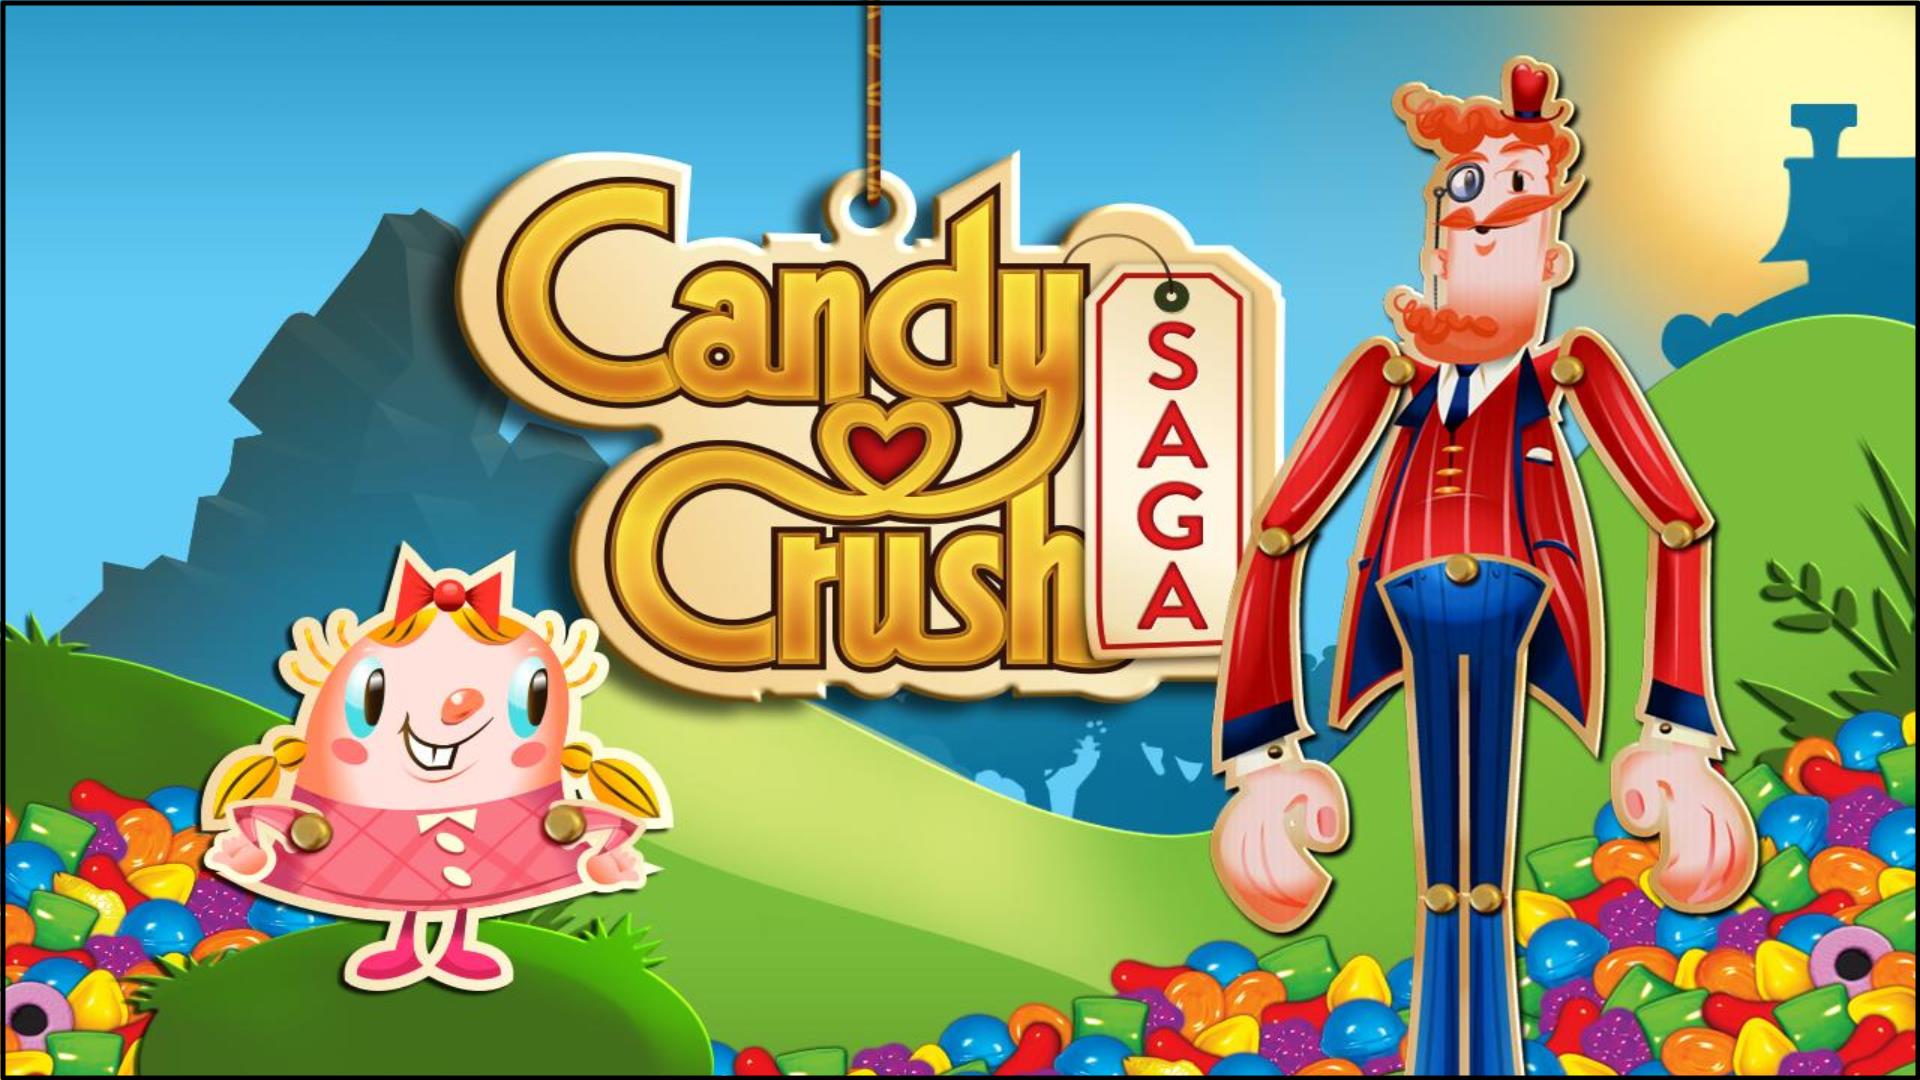 5 – Candy Crush Saga